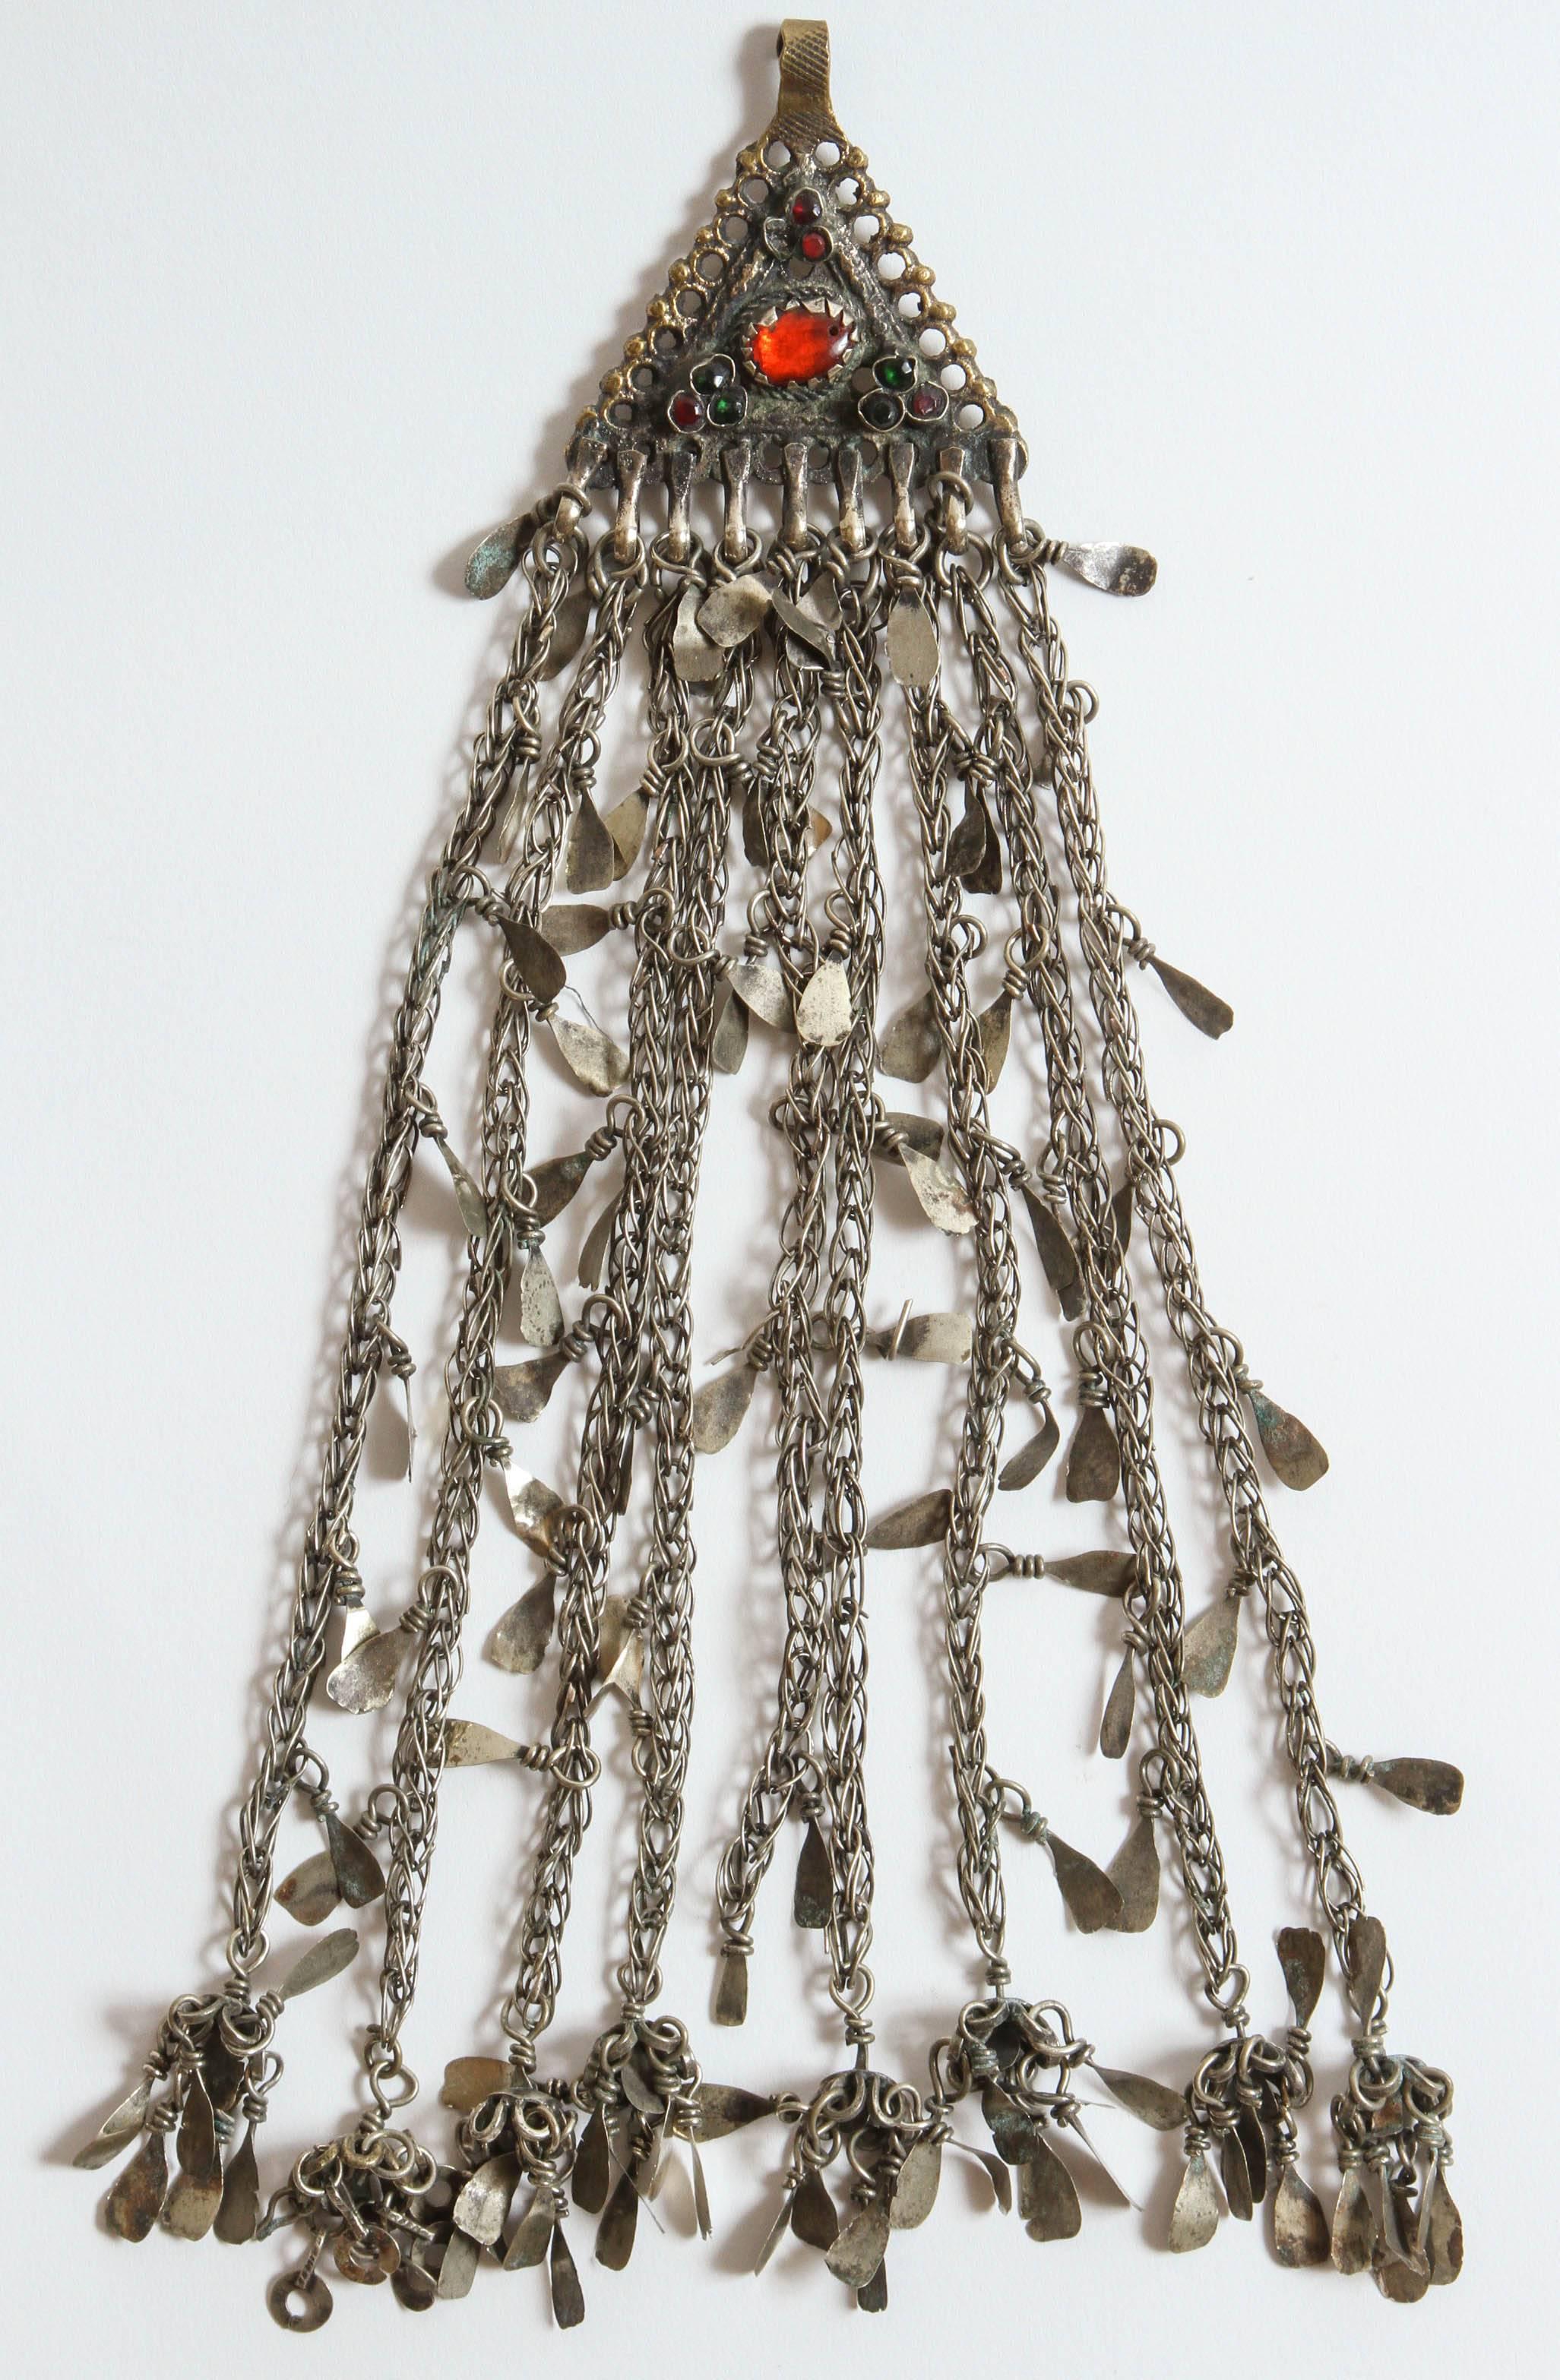 Handgefertigt in Kaschmir vom Nomadenstamm der Kuchi in Zentralasien. Der große, dreieckige Silberanhänger ist ein traditionelles Motiv in Kaschmir. Der obere Teil hat den traditionellen Haken zum Befestigen am Haar oder einer anderen Kopfbedeckung.